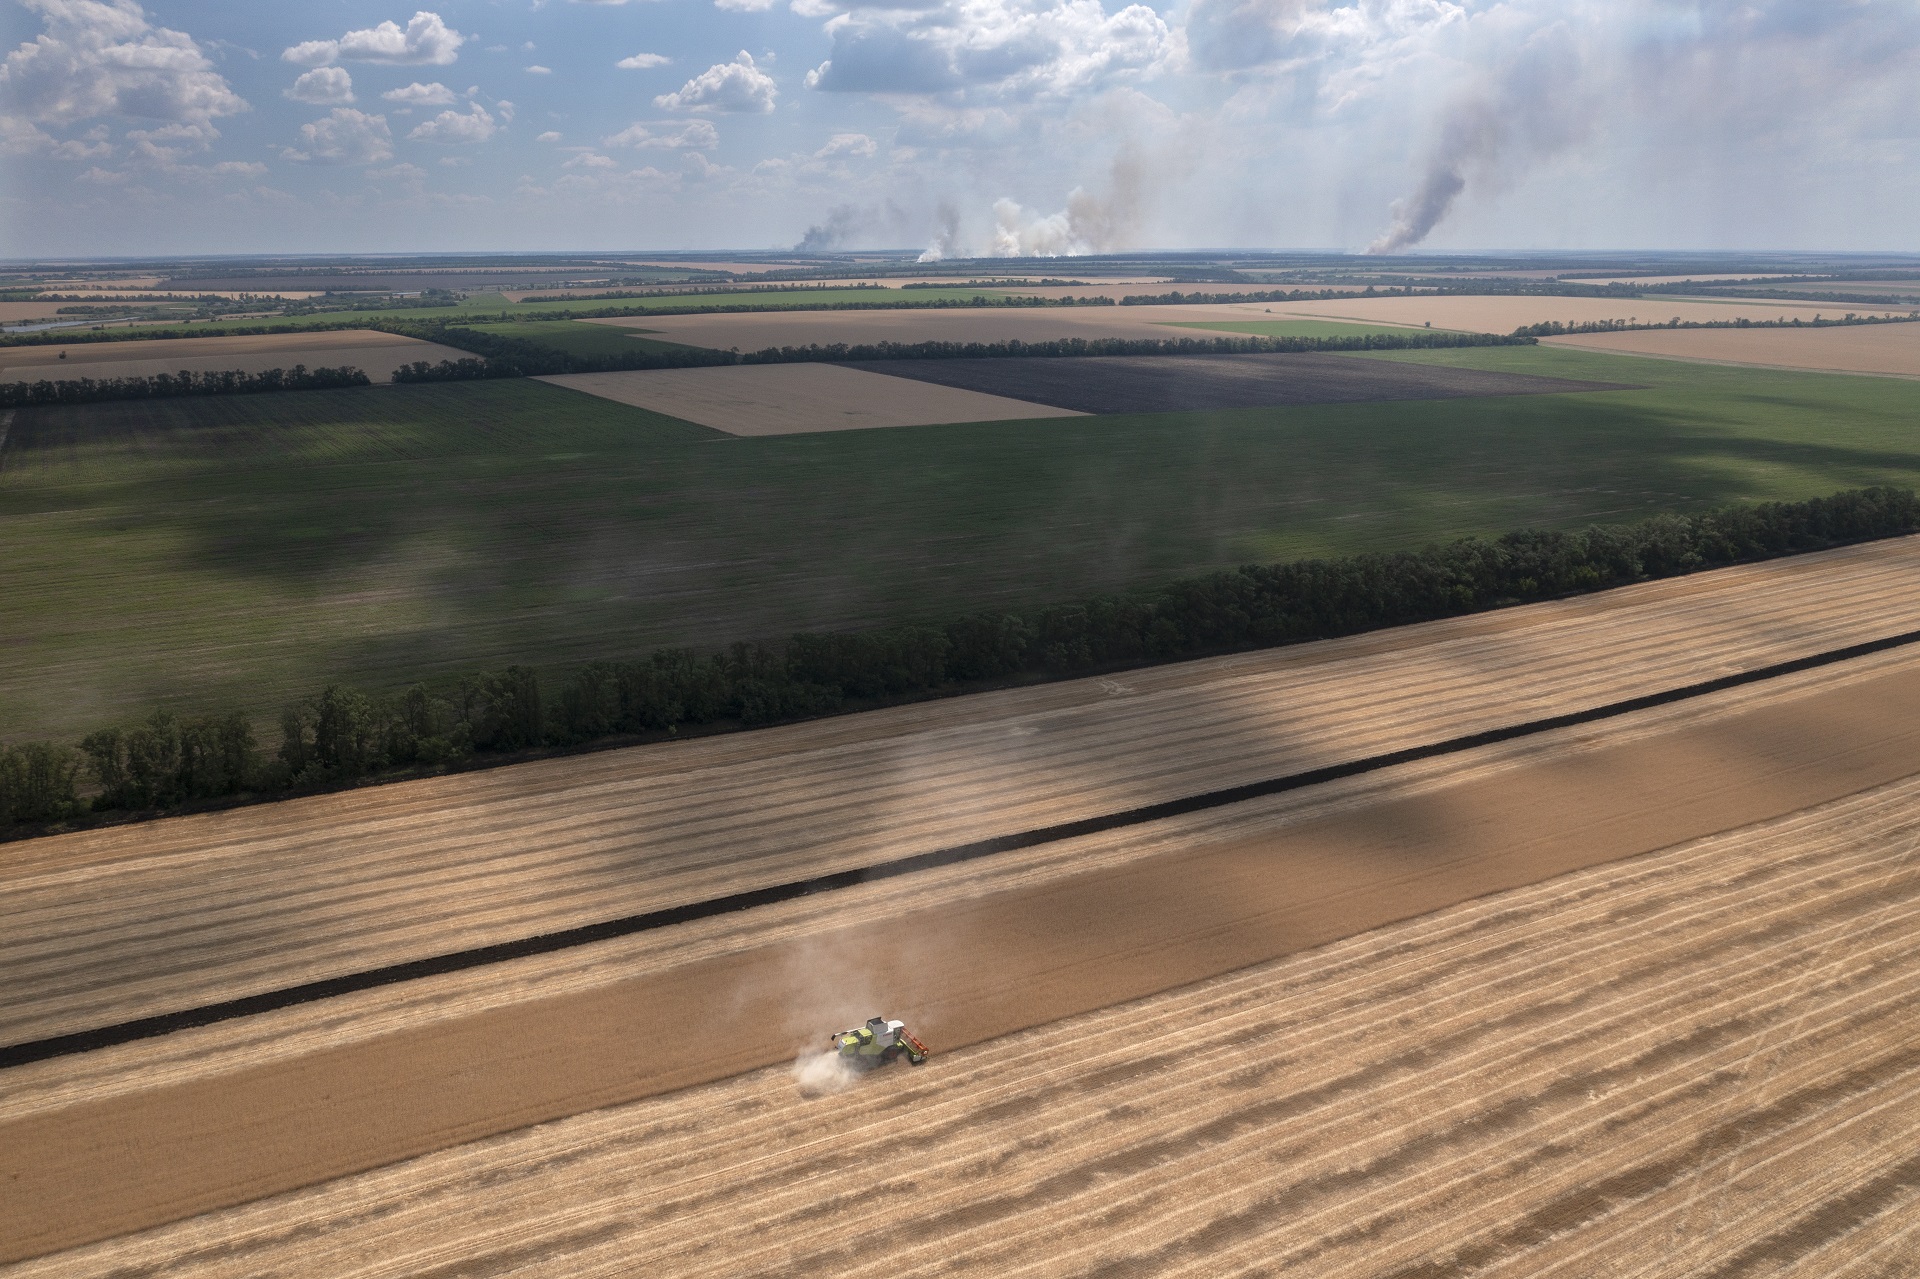 Columnas de humo se alzan al fondo durante fuertes combates, mientras un agricultor cosecha un campo